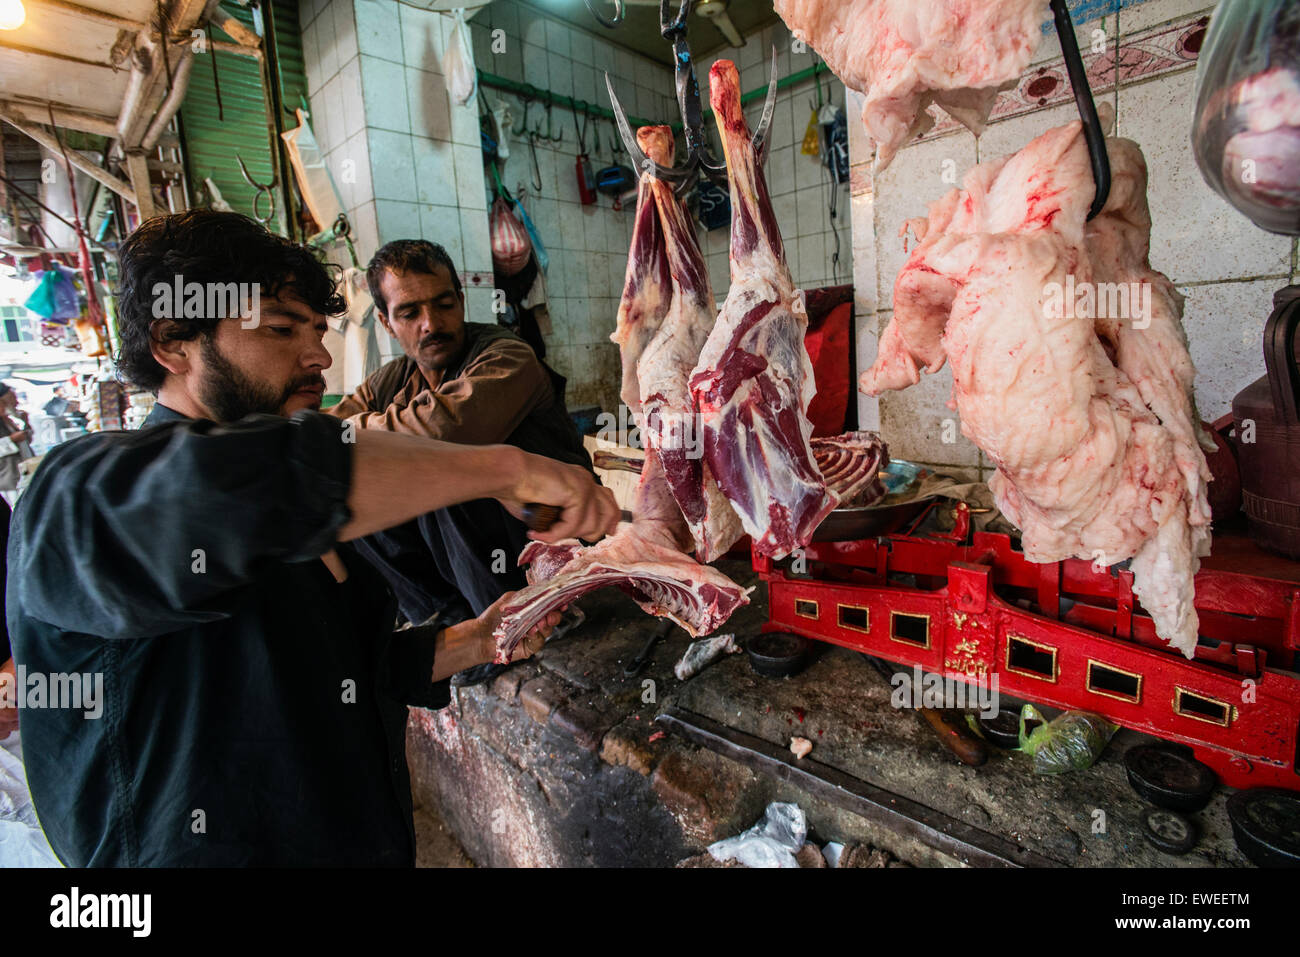 Anbieter verkaufen Fleisch auf Basar in alte Stadt von Kabul, Afghanistan Stockfoto